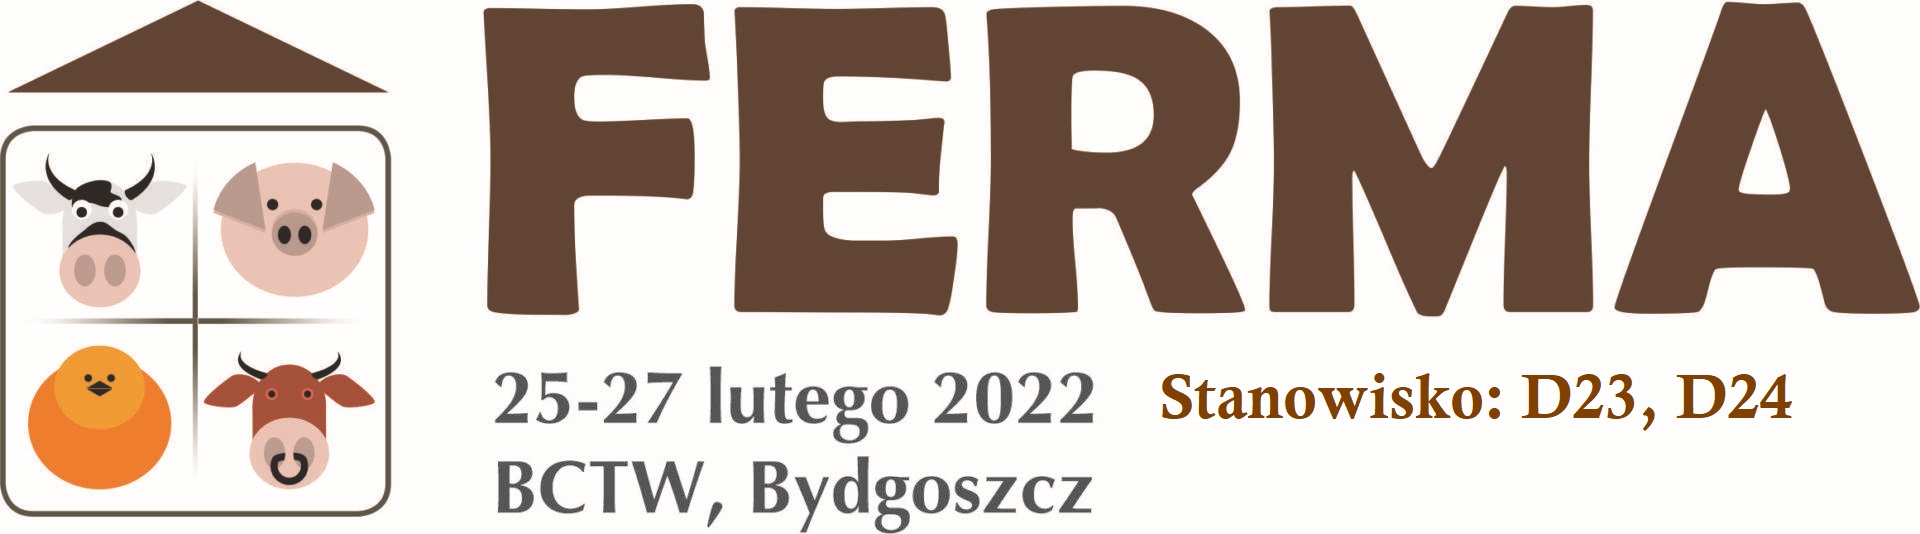 Ferma_2022_Bydgoszcz